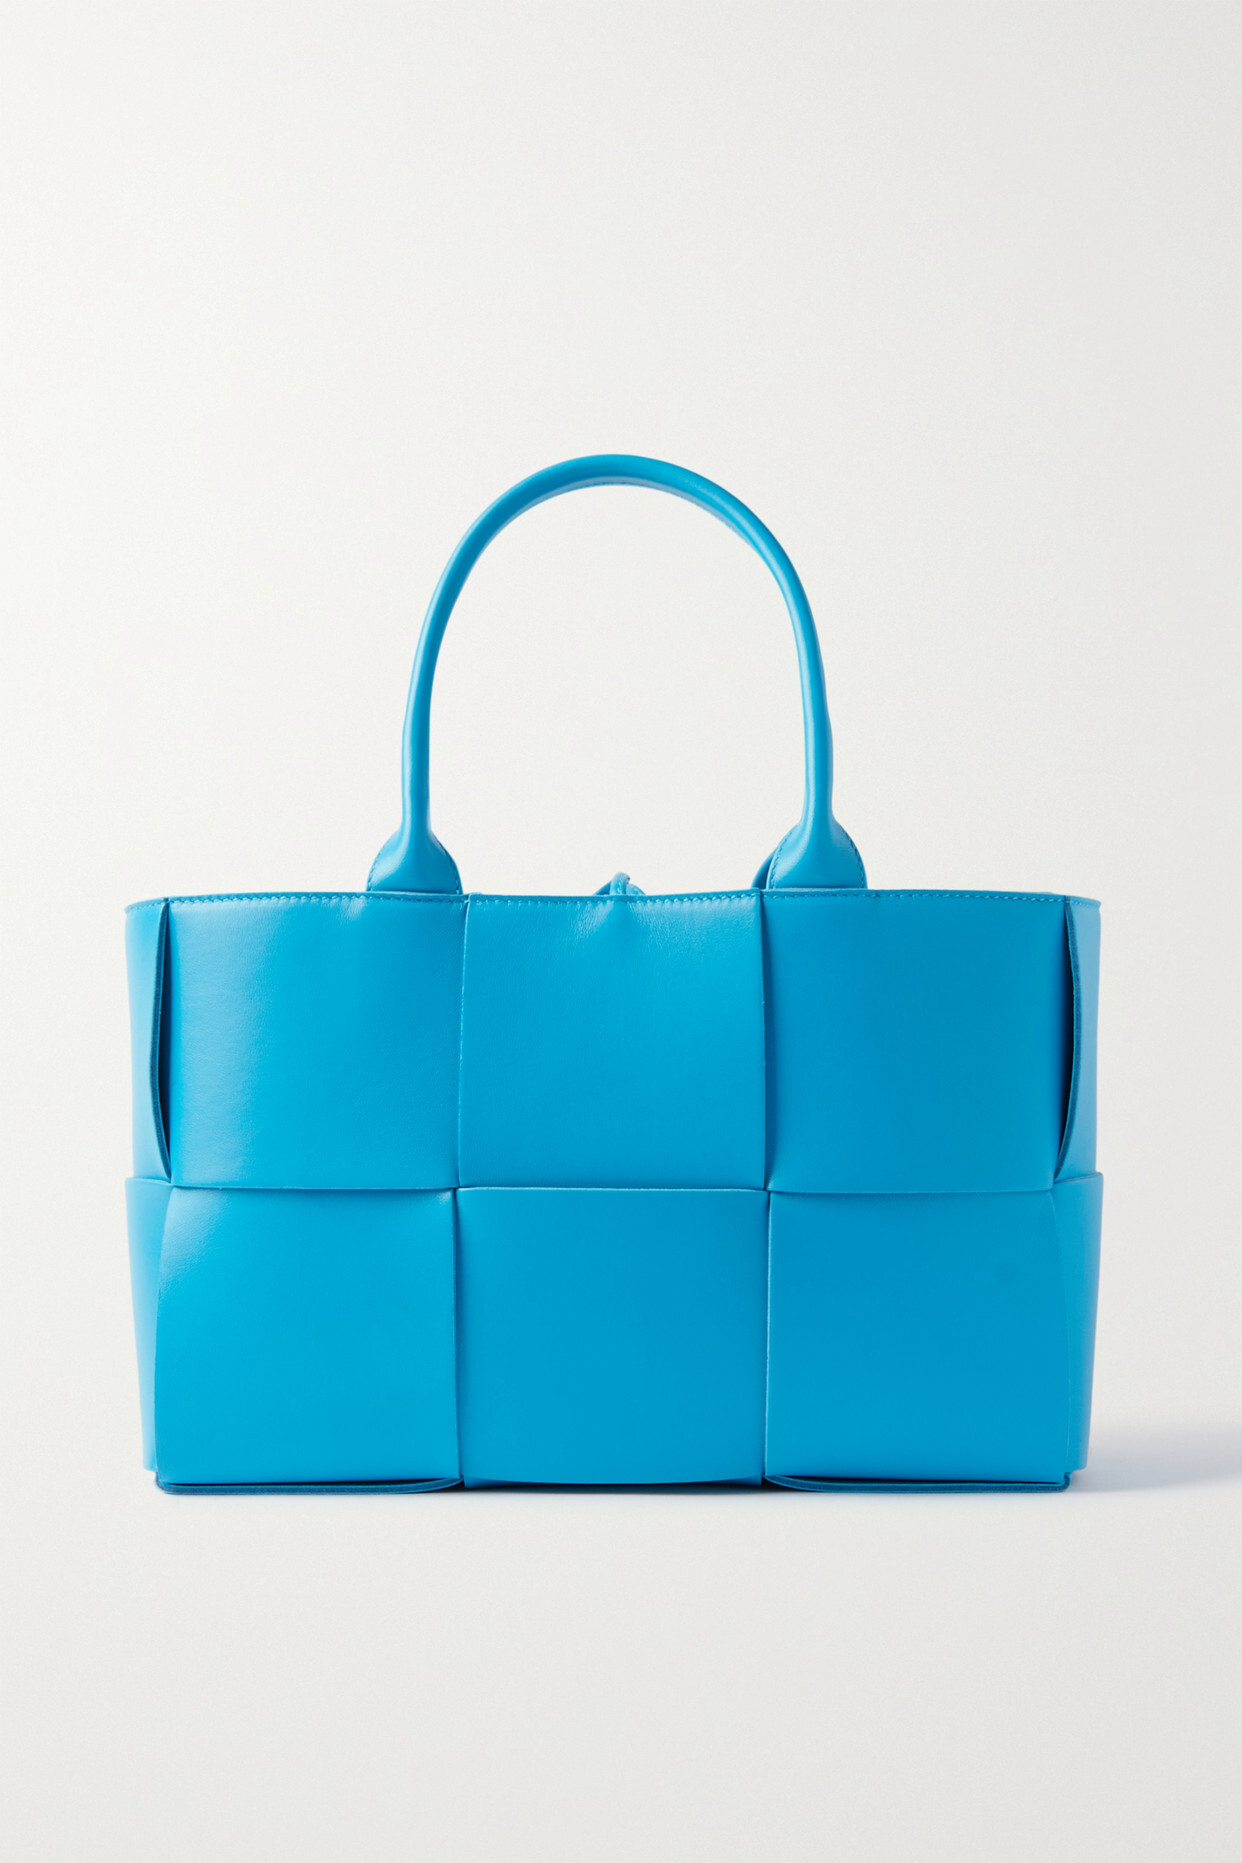 Bottega Veneta - Arco Small Intrecciato Leather Tote - Blue